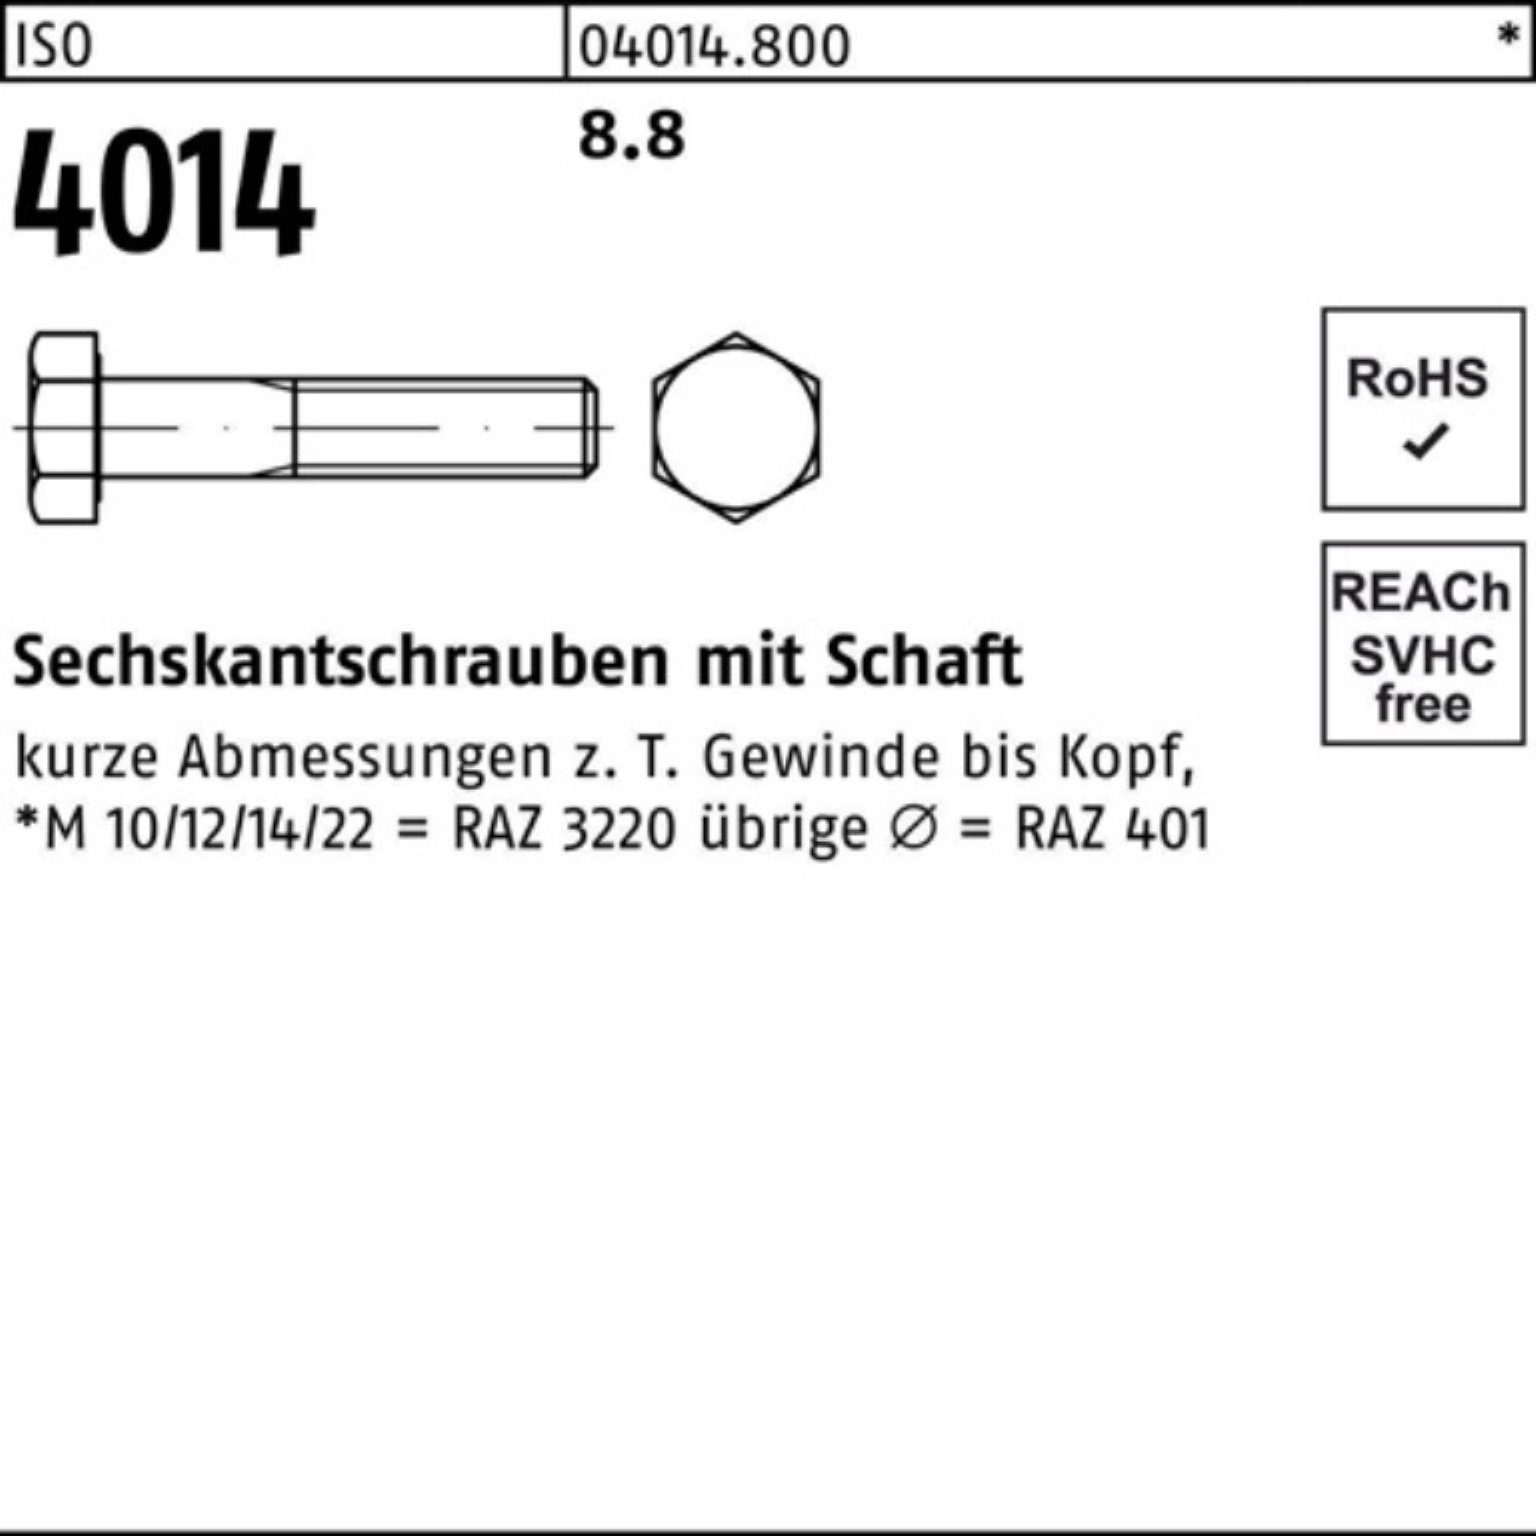 4014 Sechskantschraube 1 Bufab M39x ISO ISO 8.8 Sechskantschraube 100er 180 Stück Pack Schaft